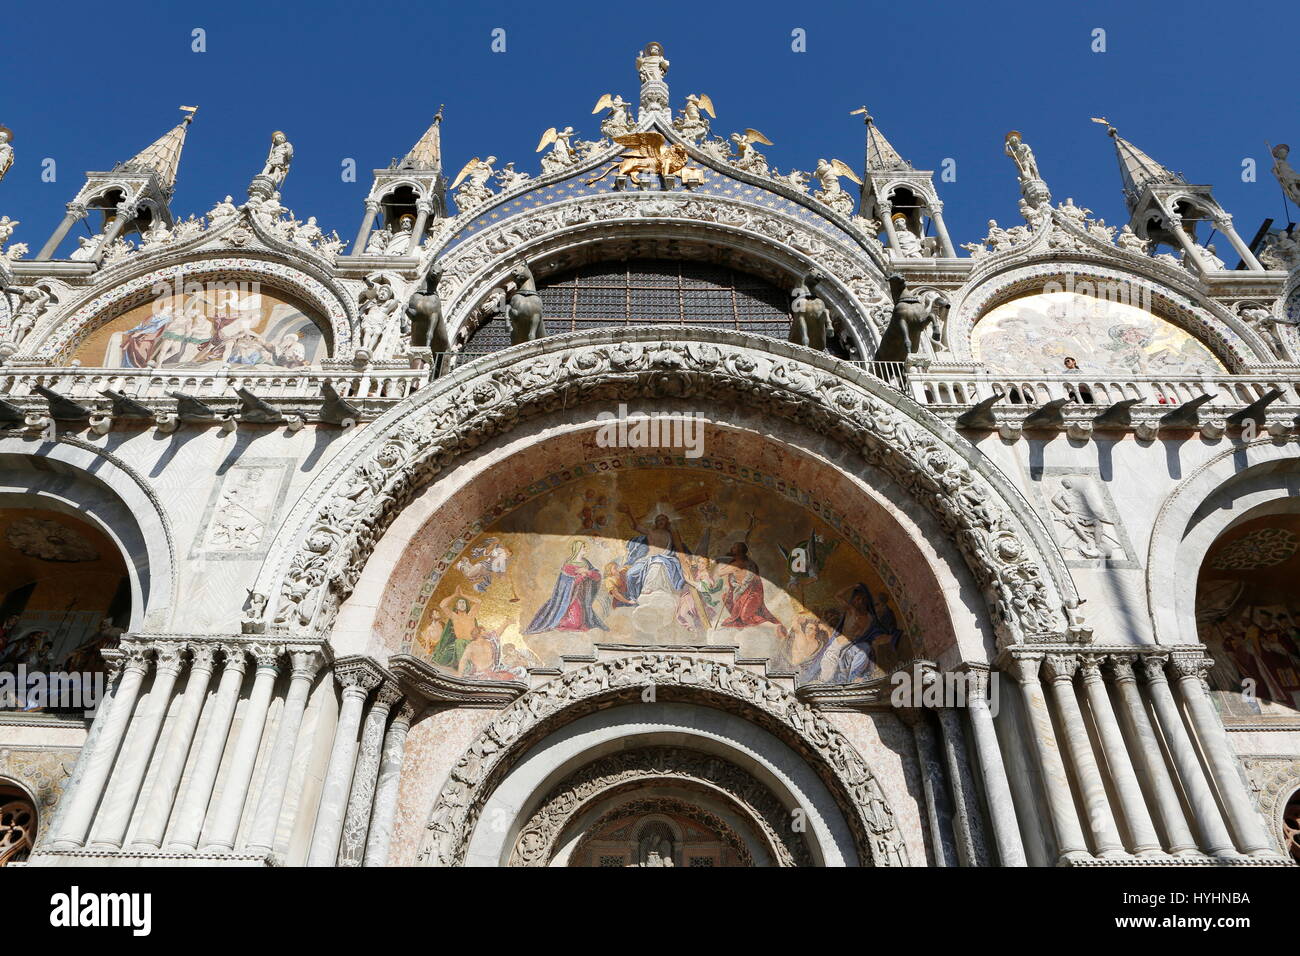 La basilique de San Marco, chevaux de San Marco, Piazza San Marco, Venice, Veneto, Italie Banque D'Images